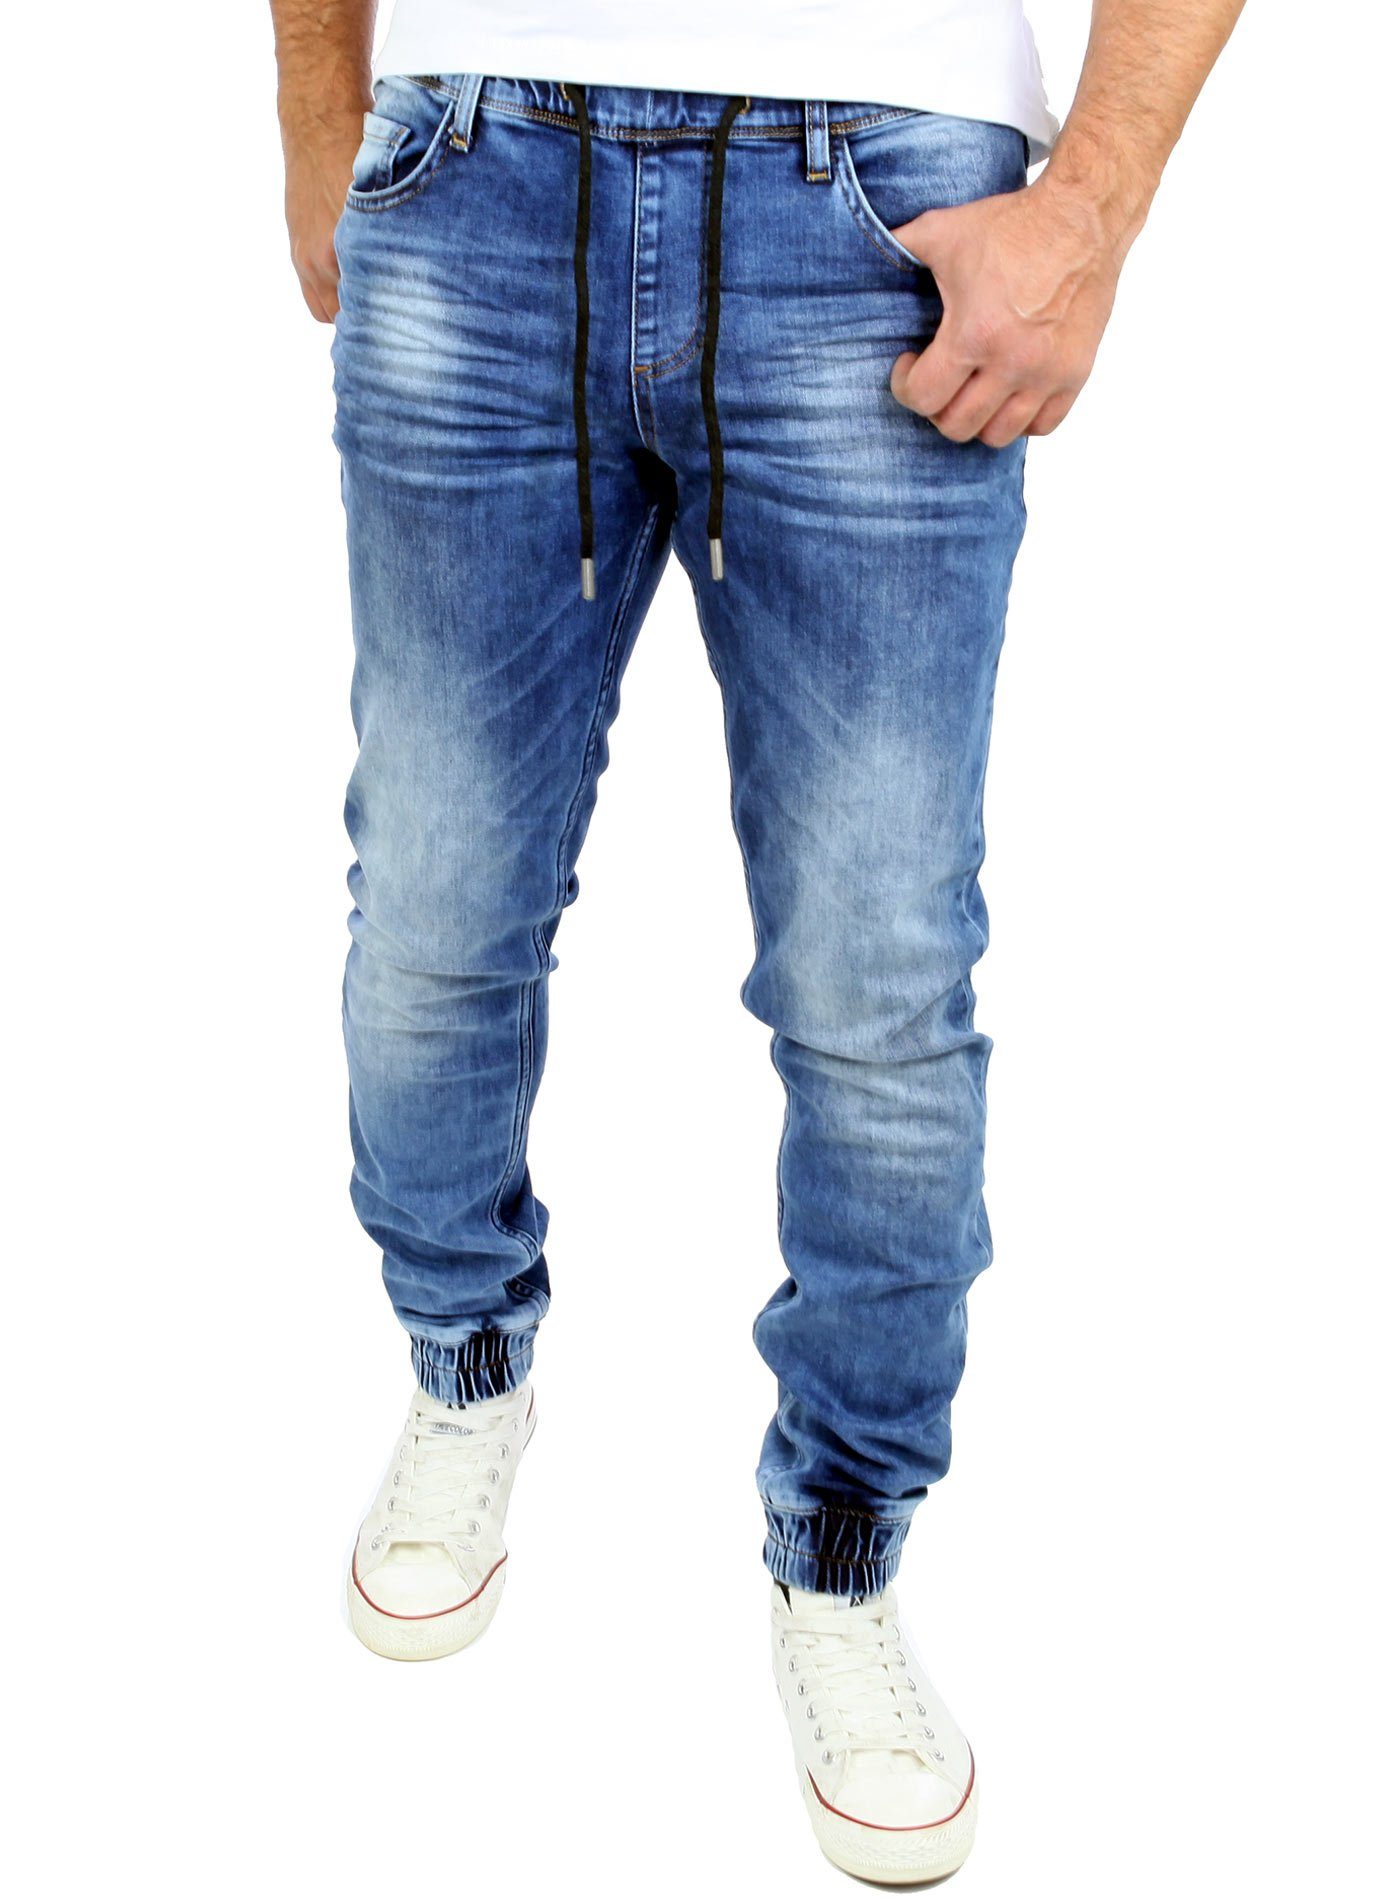 Jeanshose Jogger Clubwear Jeans Denim Casual Slim Herren BOLF 6F6  Classic 